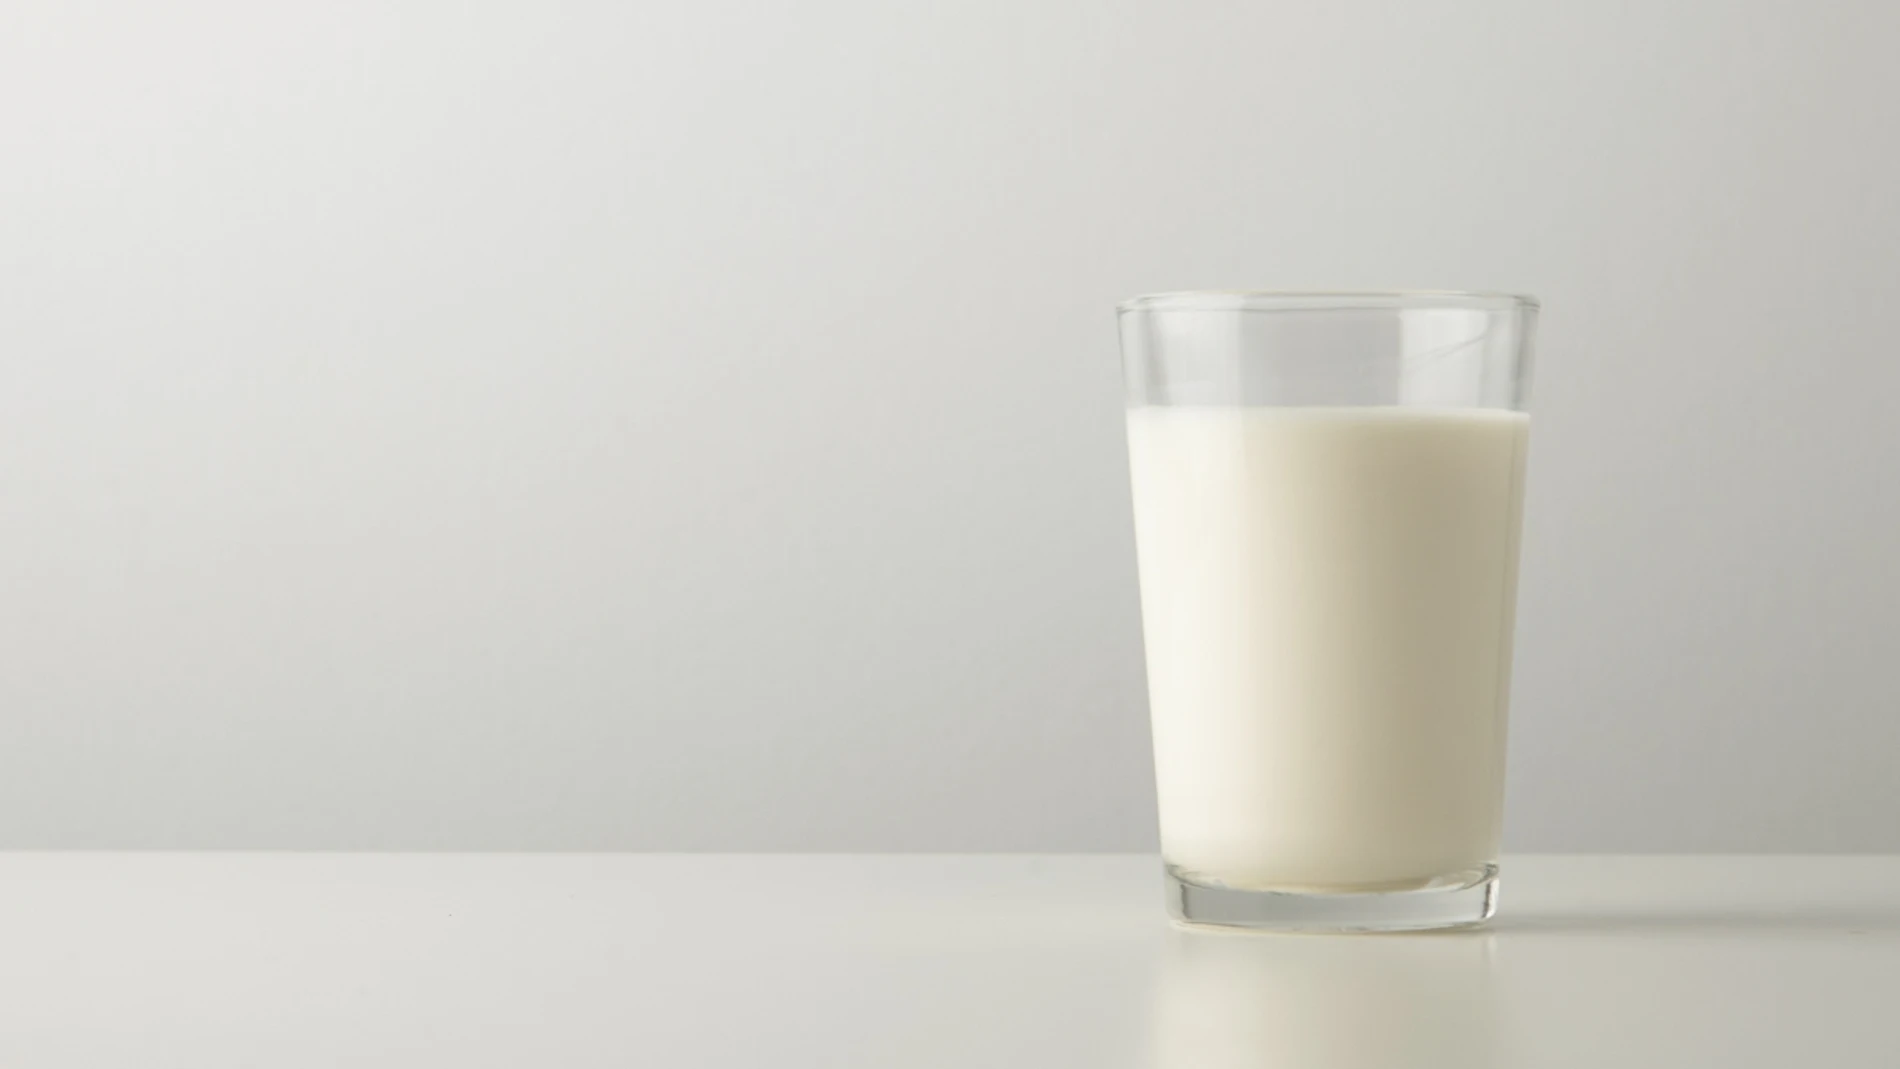 Un usuario descubre algo insólito en la leche de Mercadona